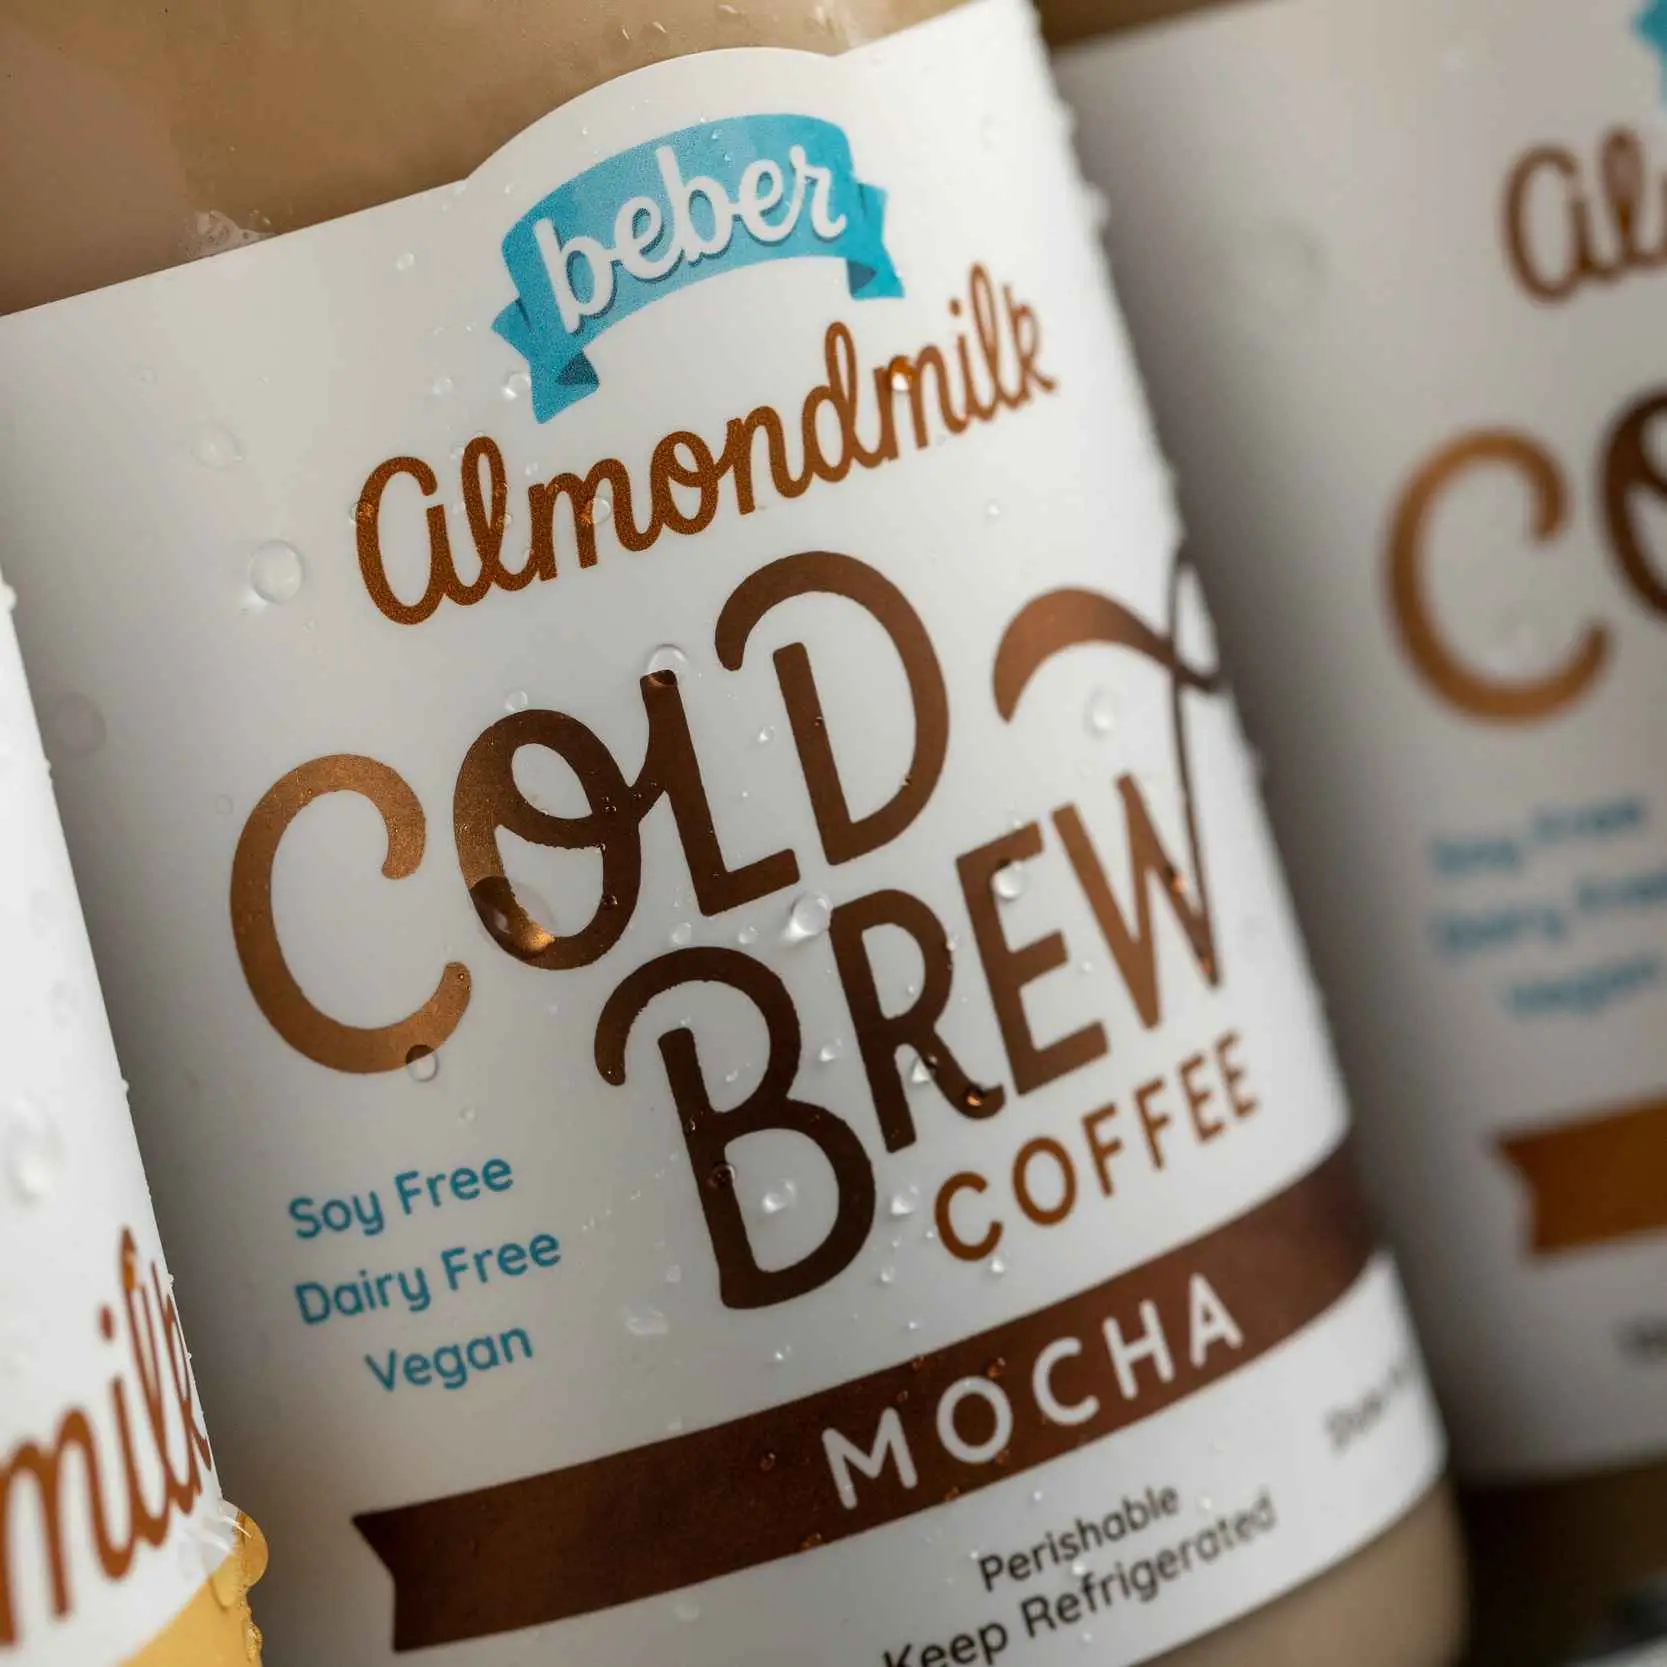 Mocha Cold Brew Almondmilk Delivery